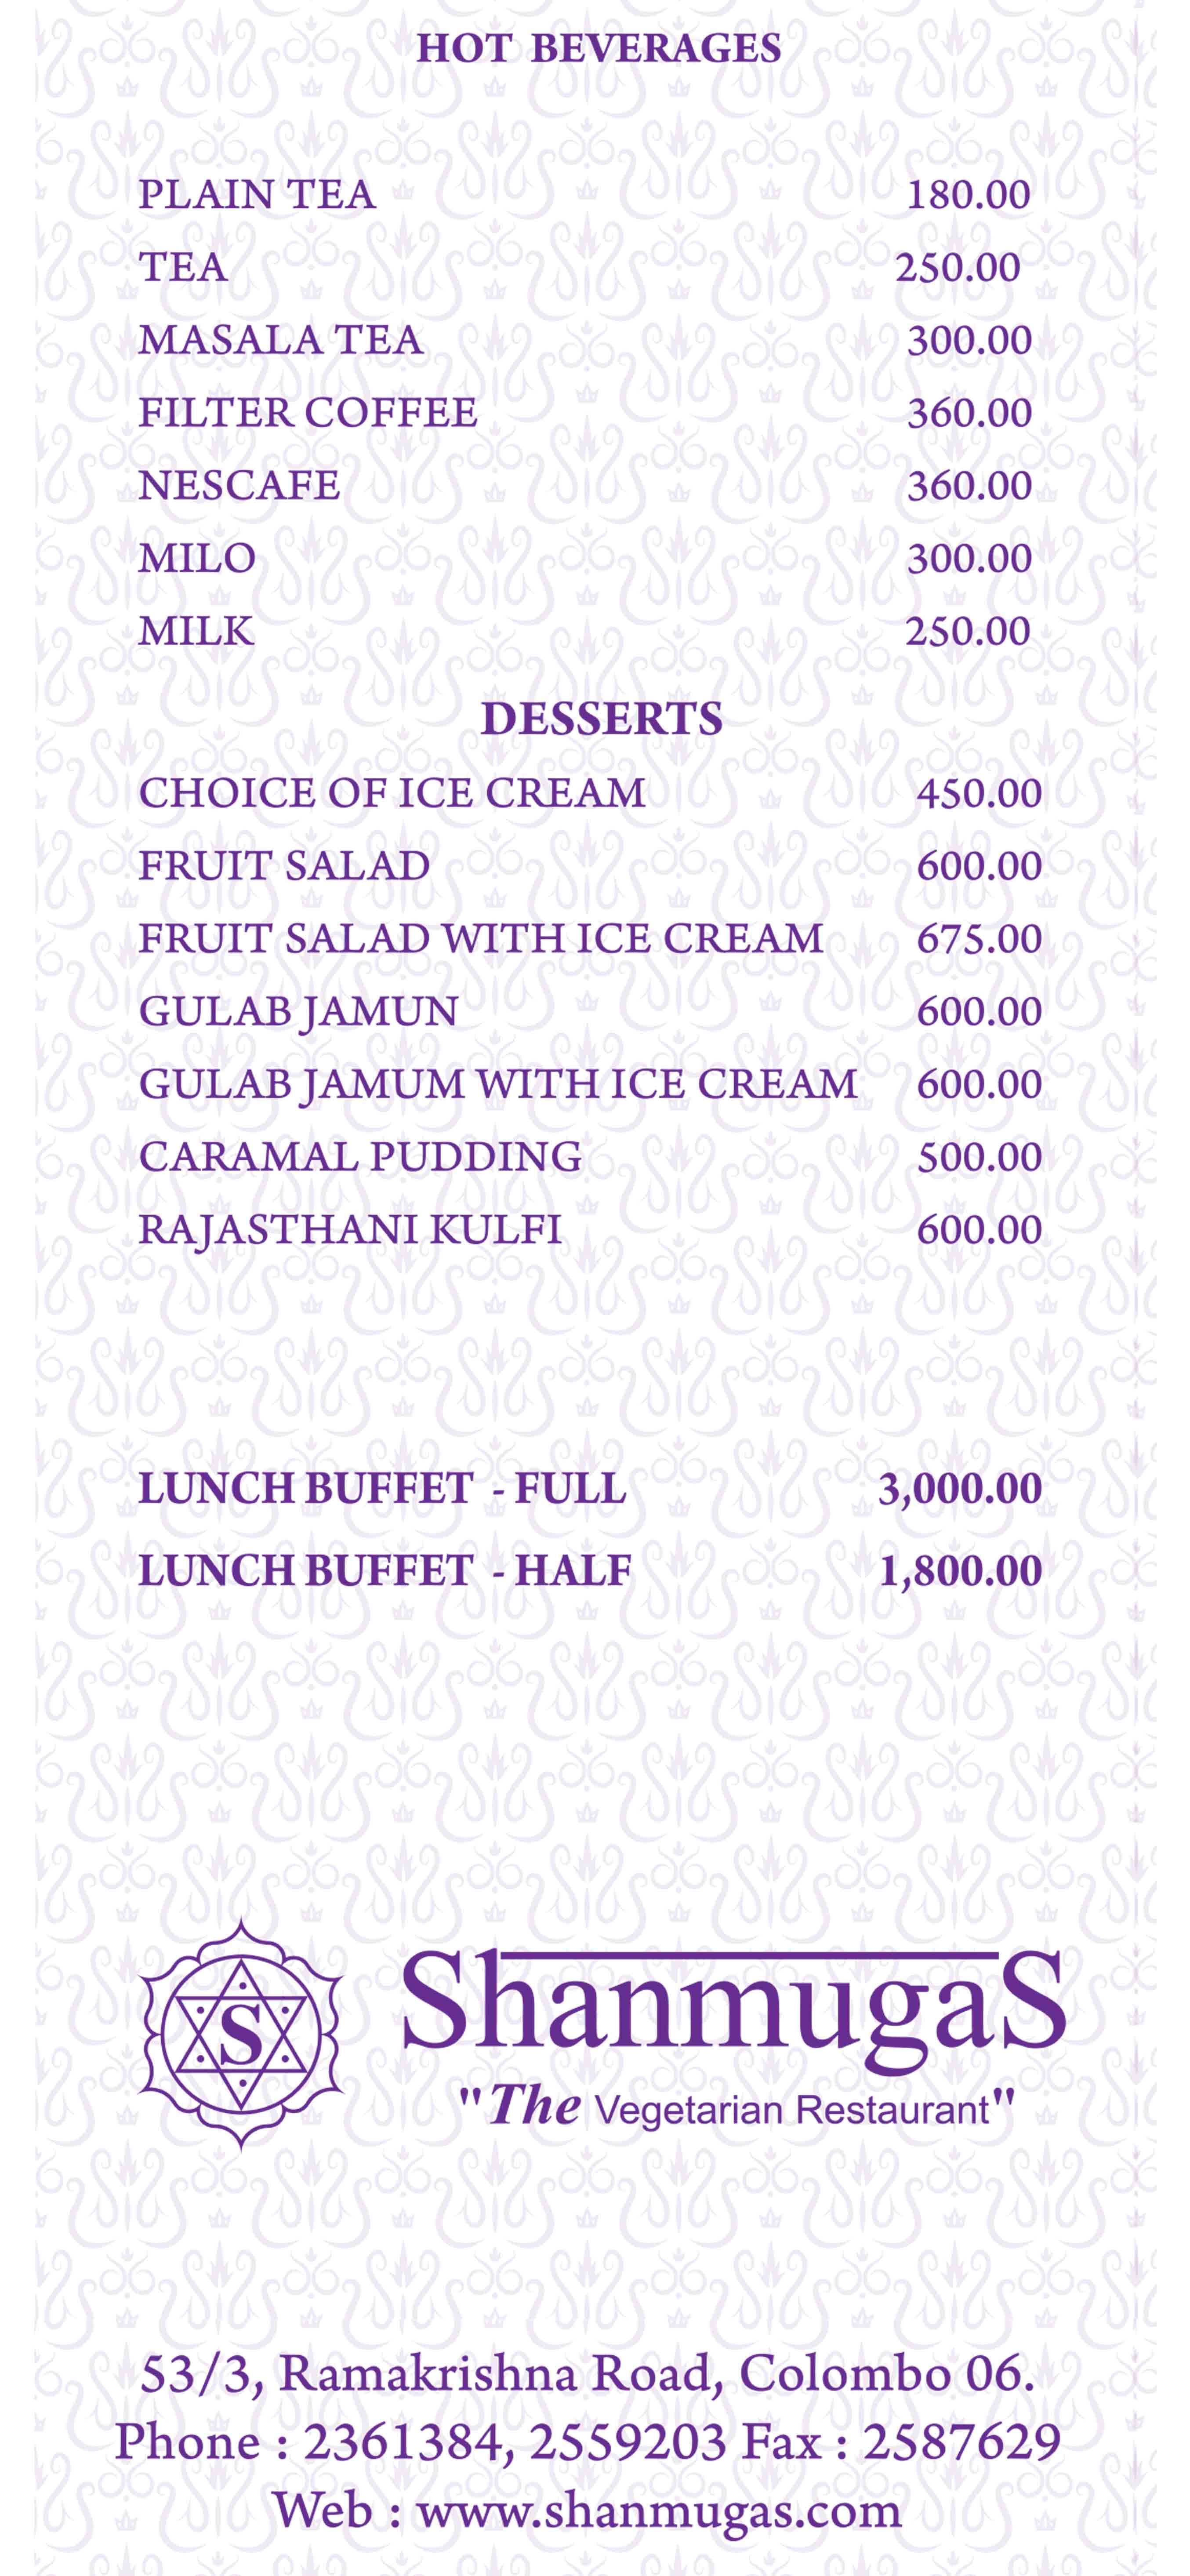 Shanmugas - Bamba menu